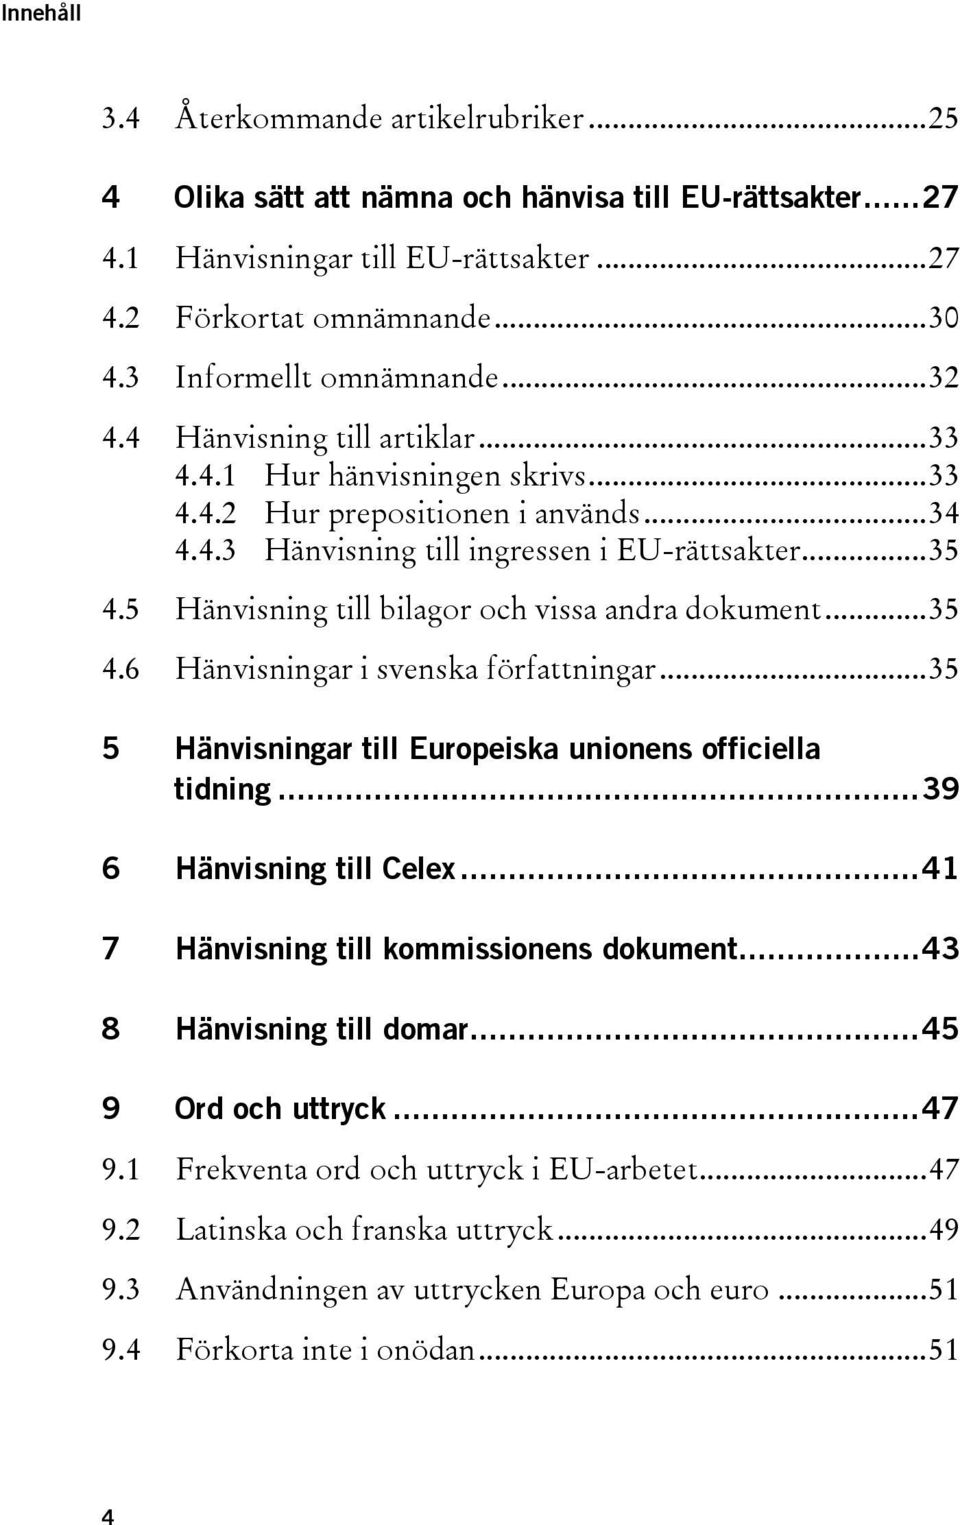 5 Hänvisning till bilagor och vissa andra dokument... 35 4.6 Hänvisningar i svenska författningar... 35 5 Hänvisningar till Europeiska unionens officiella tidning... 39 6 Hänvisning till Celex.